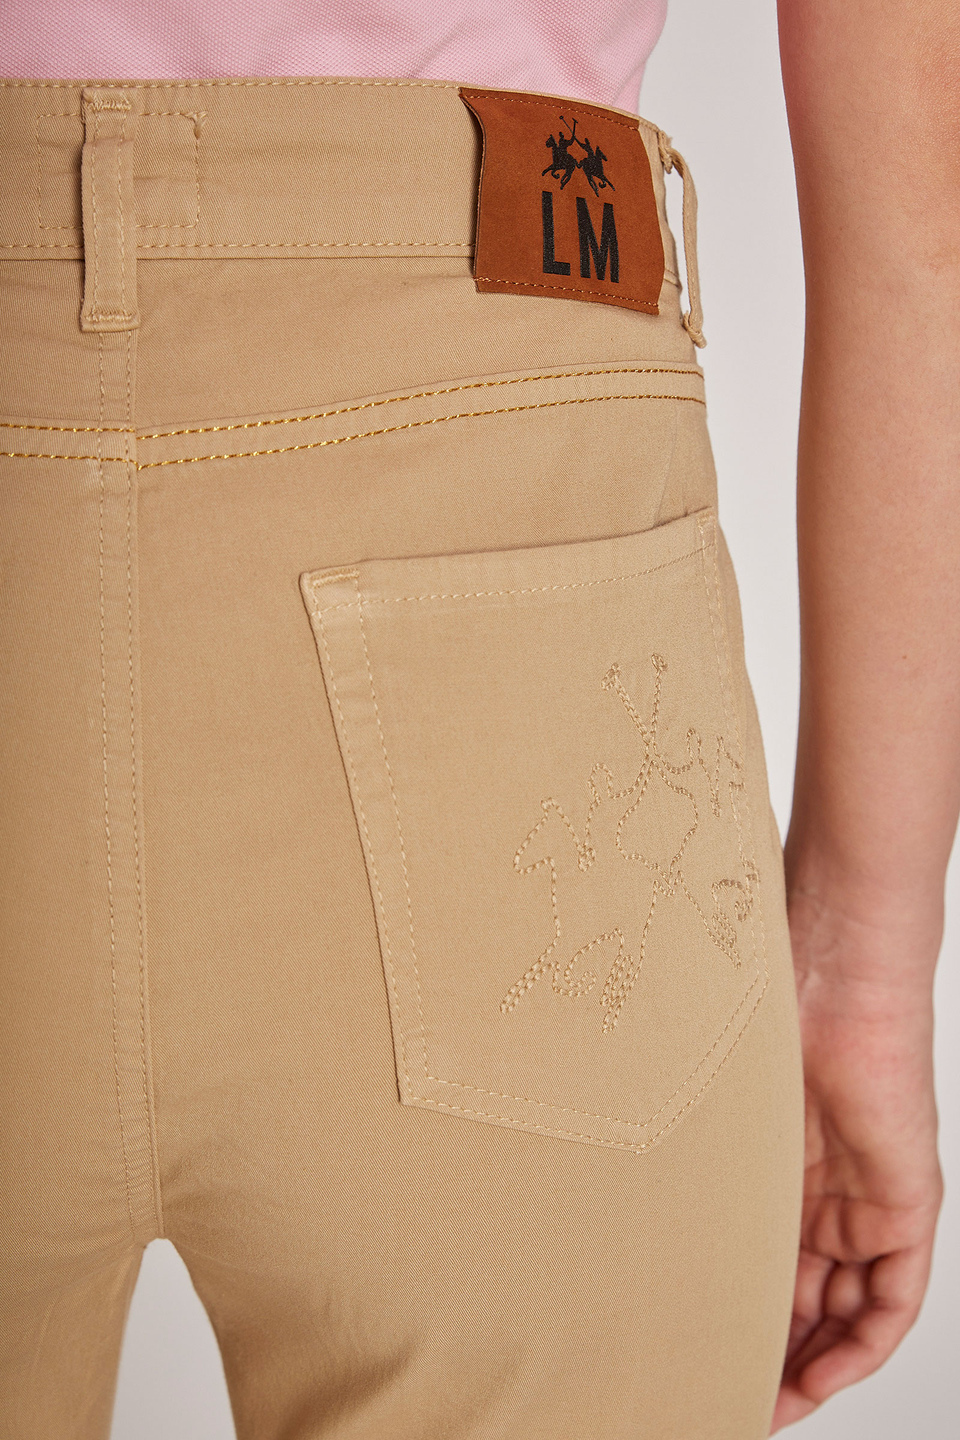 Pantalon femme en coton stretch, cinq poches et coupe classique | La Martina - Official Online Shop